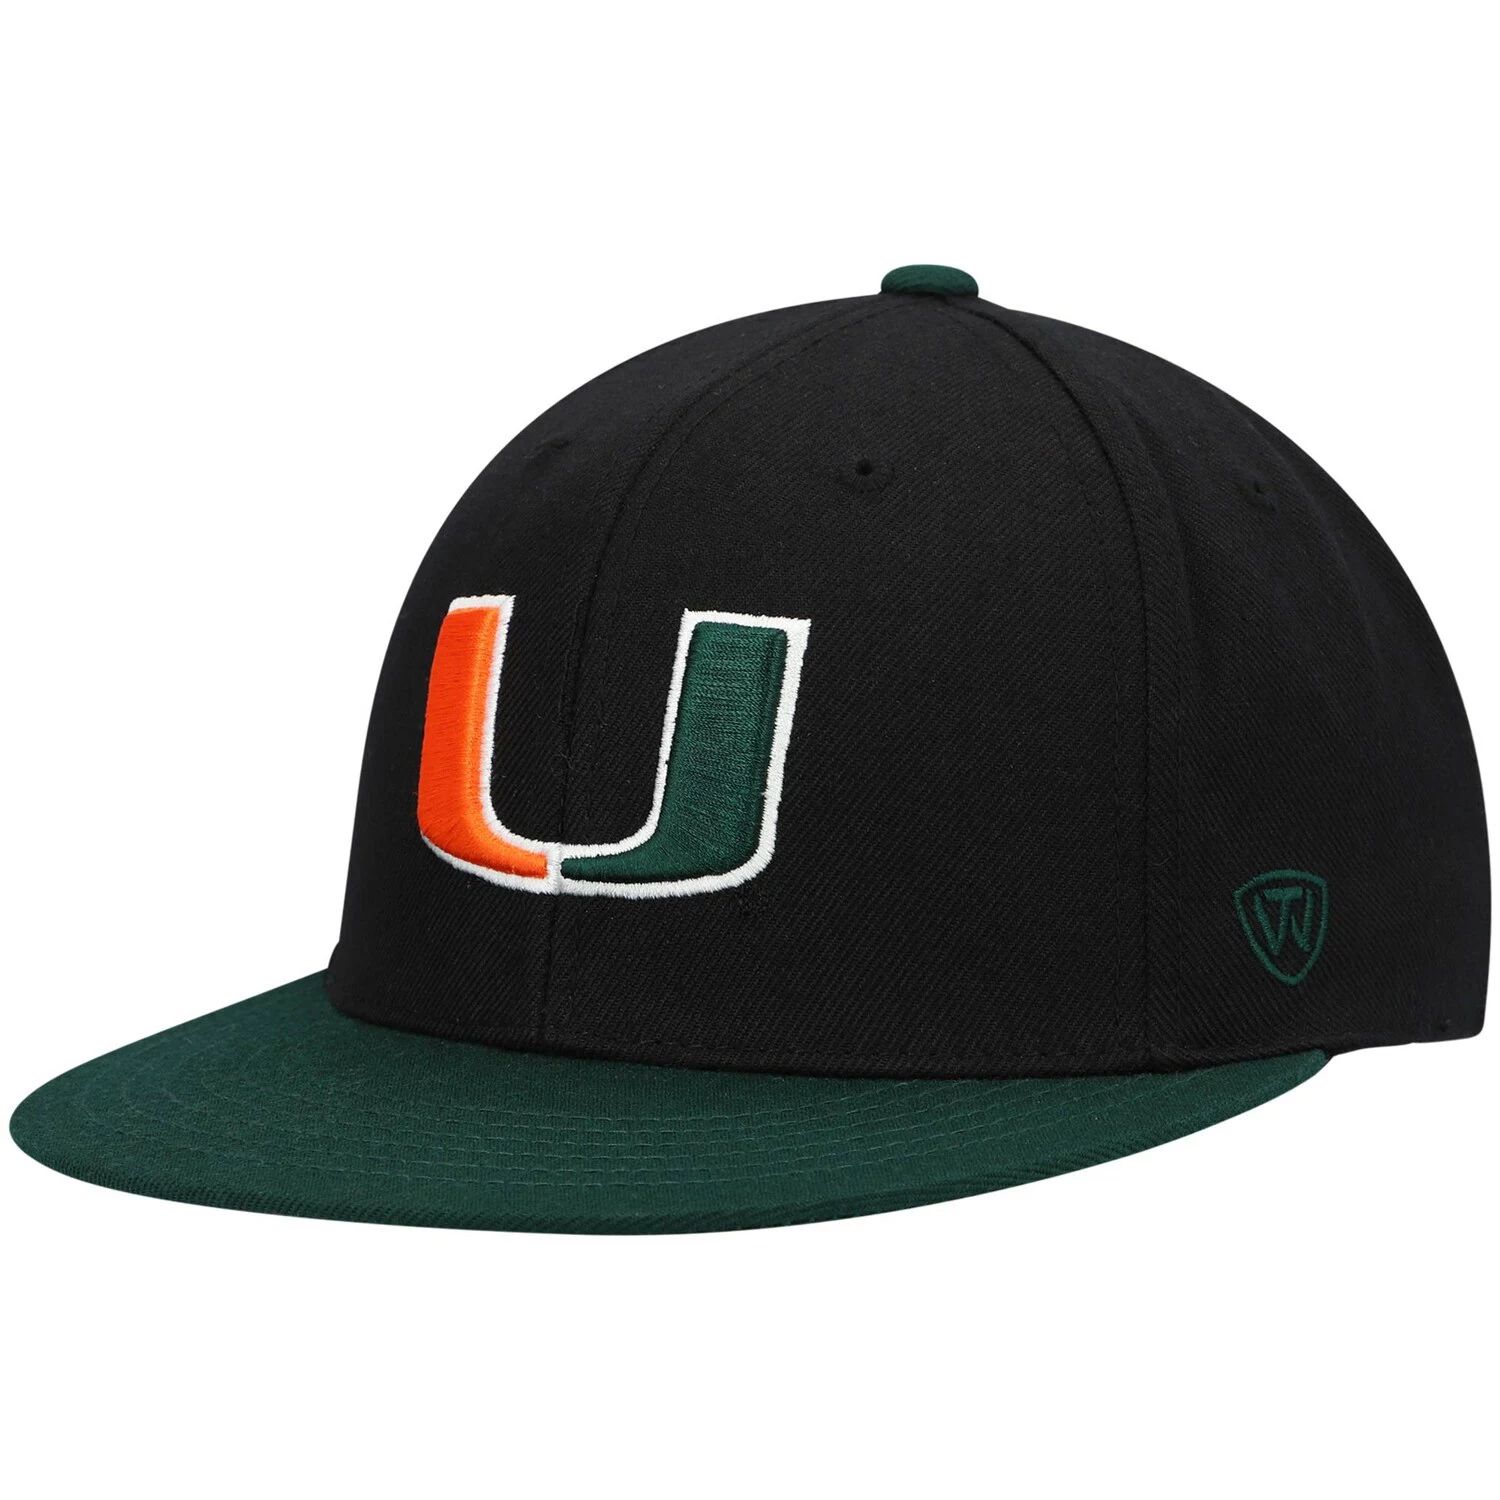 Мужская двухцветная приталенная шляпа Top of the World черного/зеленого цвета команды Miami Hurricanes Team